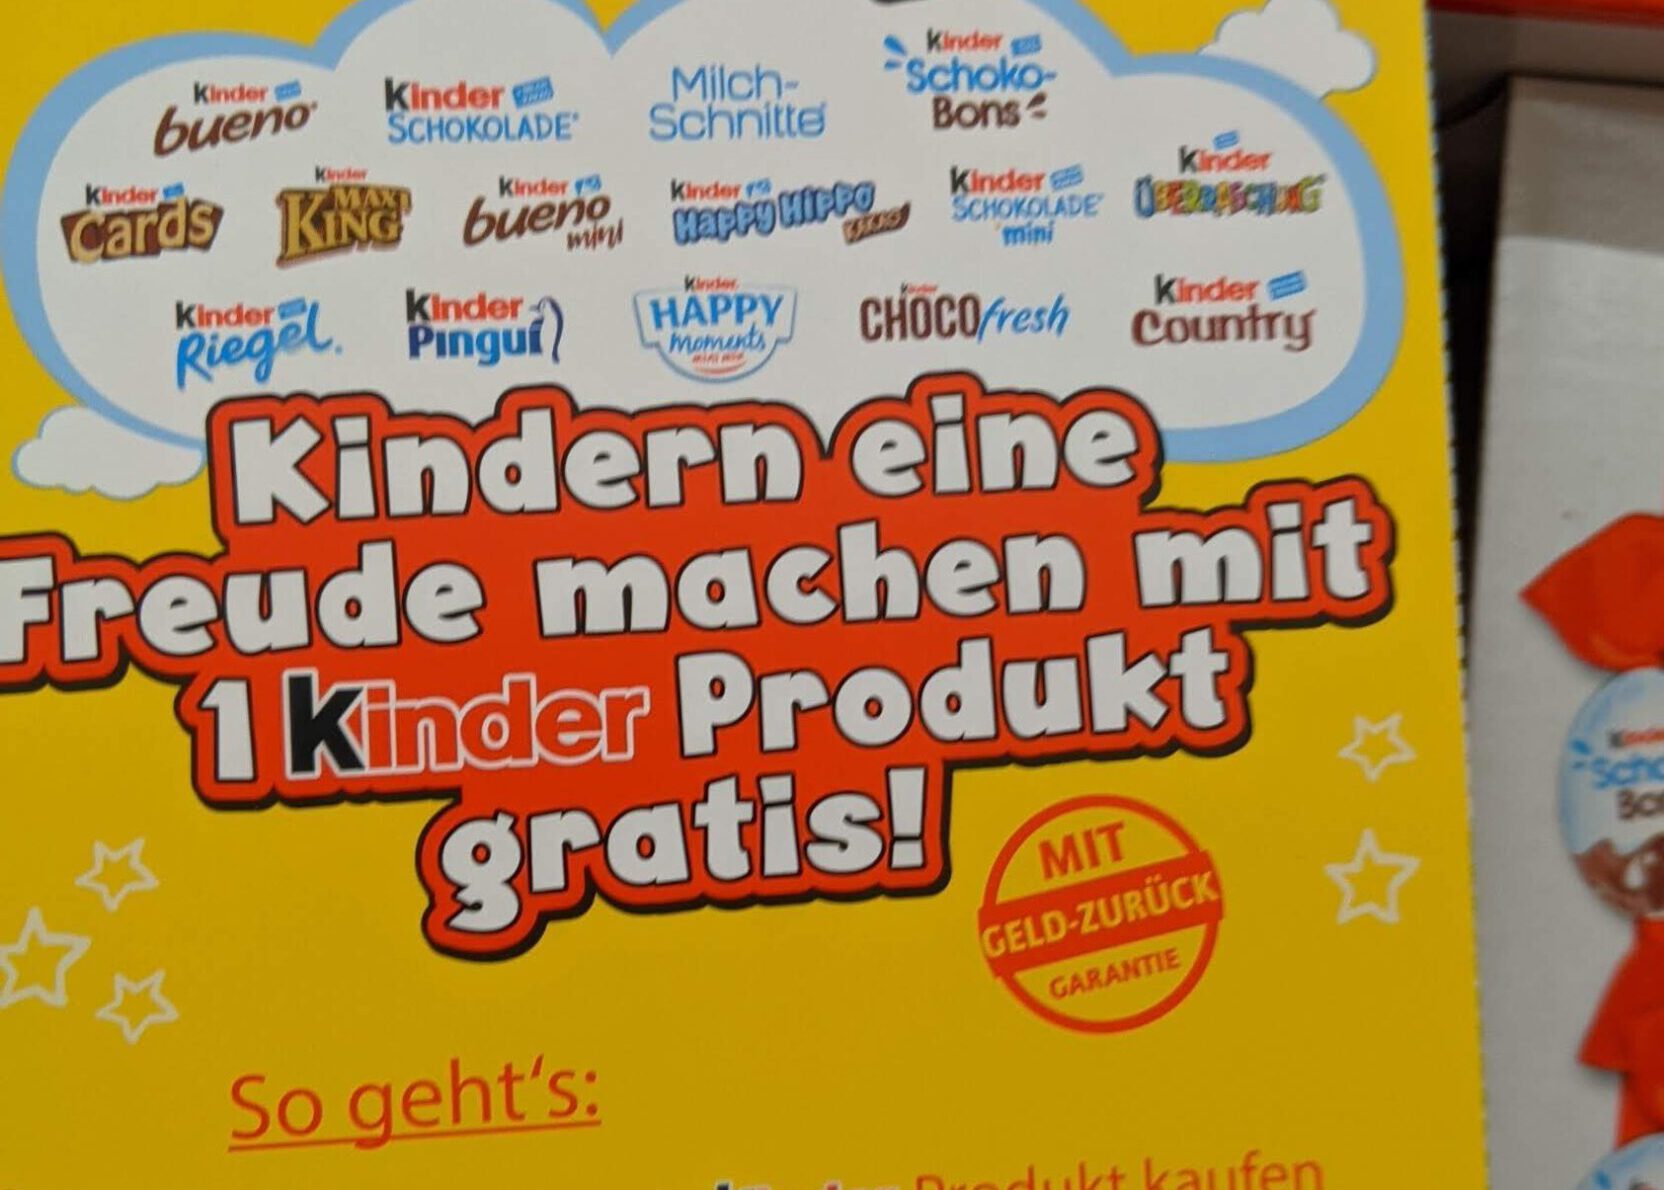 Ferrero Kindertag 2022: ein Kinder-Produkt gratis testen - Kassenbon hochladen